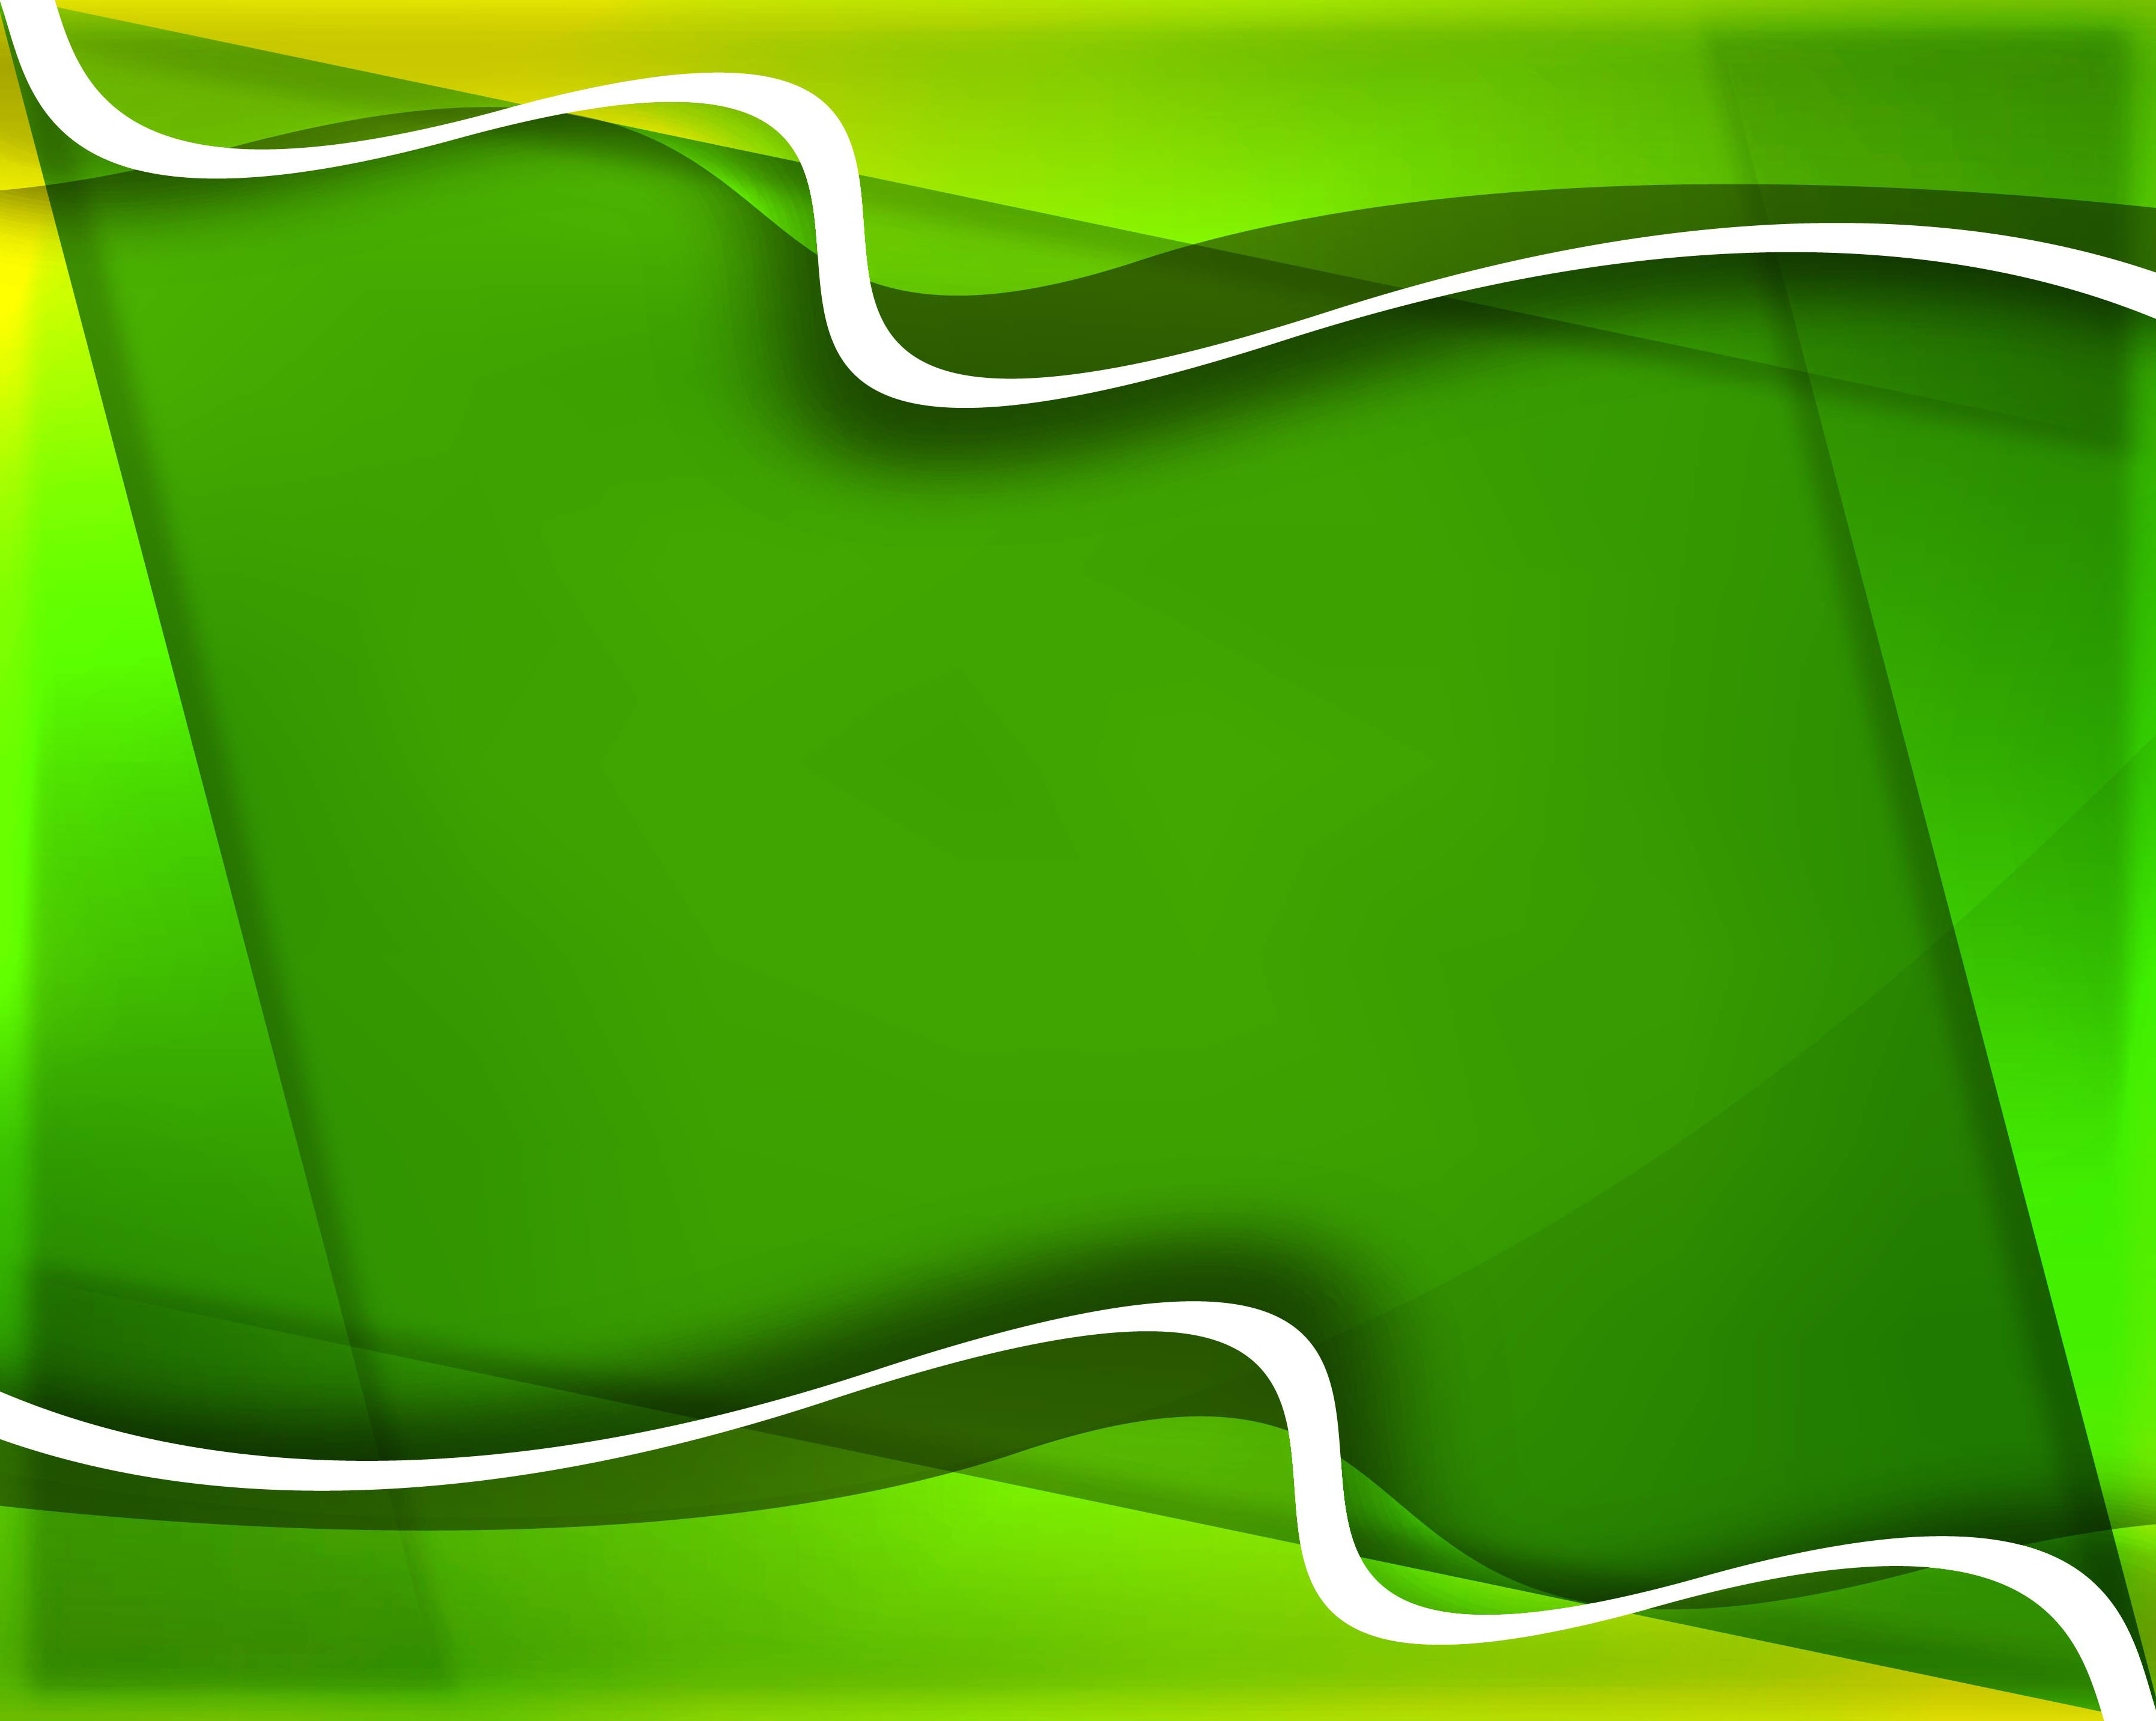 Tinh tế và sáng tạo, hình nền sóng xanh Elegant green creative wave background 235289 Vector Art trên Vecteezy là một tác phẩm nghệ thuật thực sự. Hãy khám phá hình ảnh tràn đầy năng lượng này và cảm nhận sự sang trọng của màu xanh trong thiết kế của bạn.